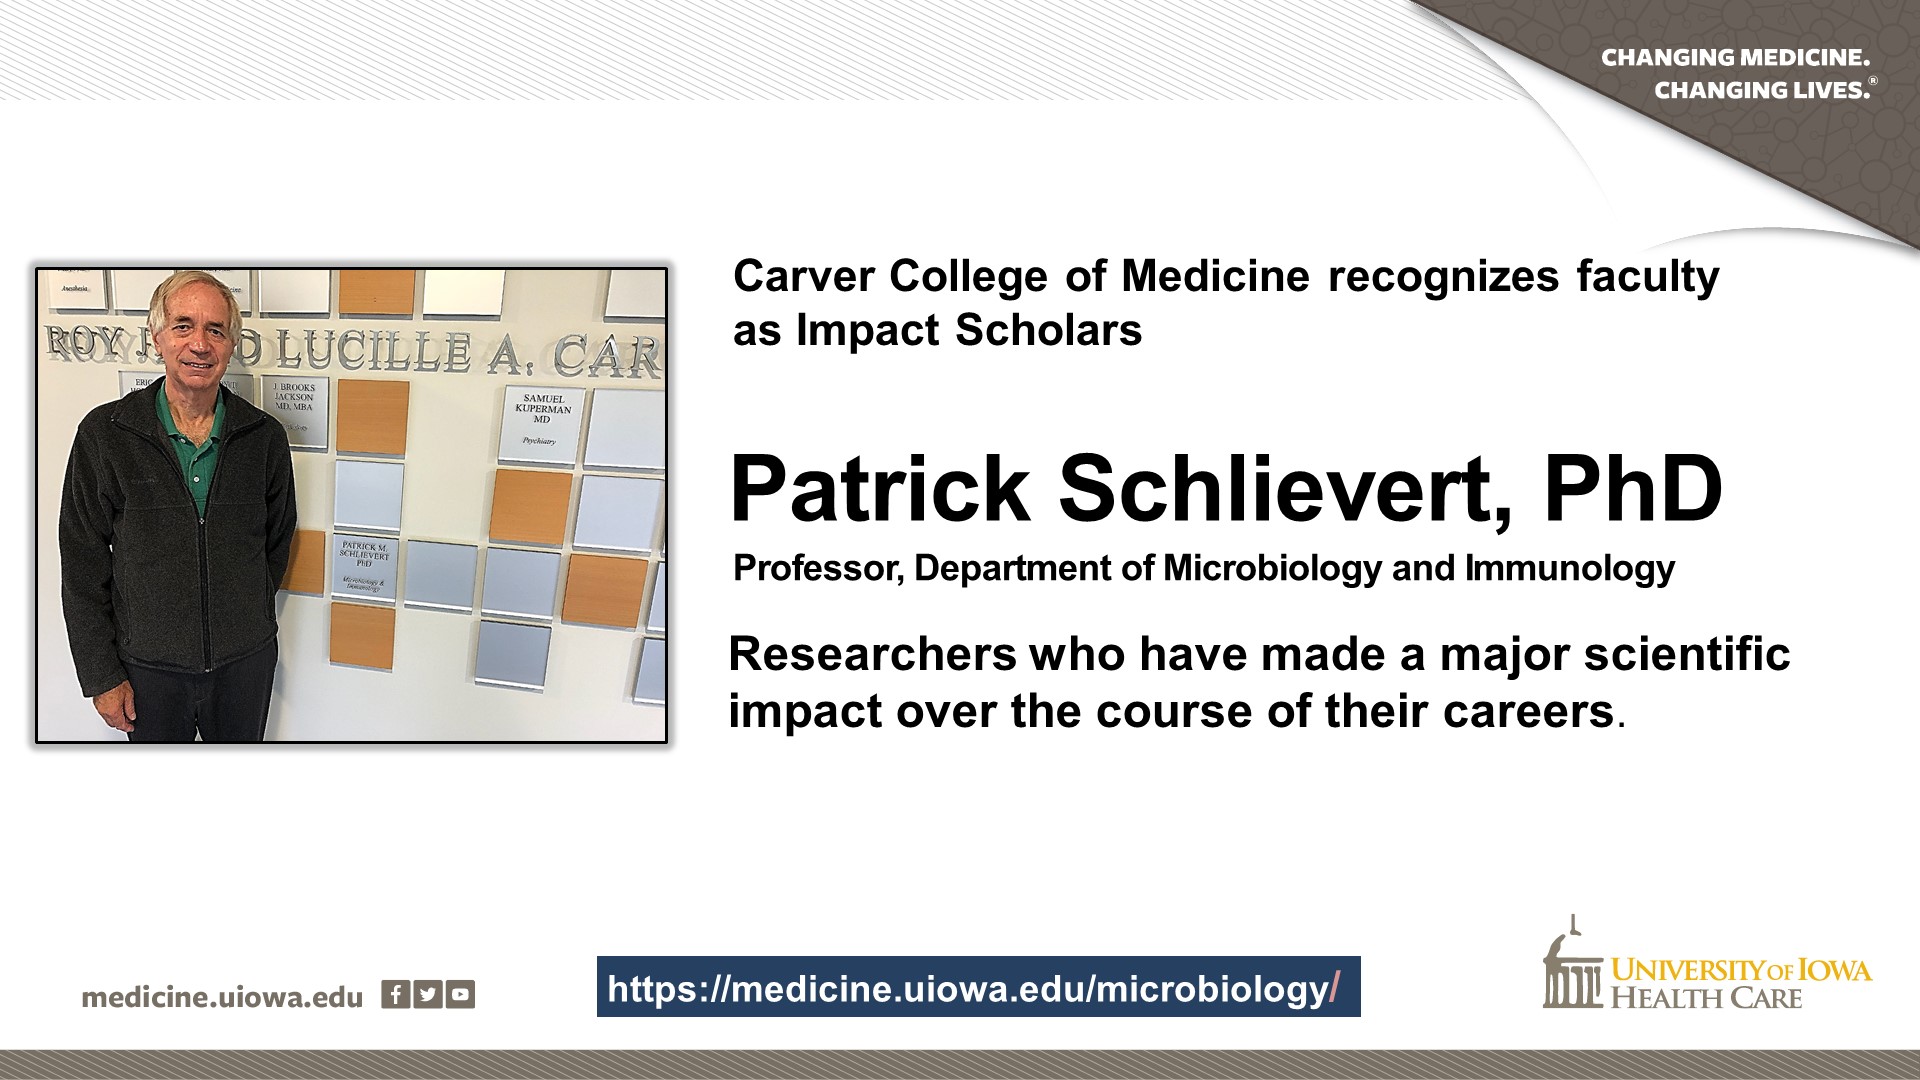 Impact Scholar Patrick Schlievert